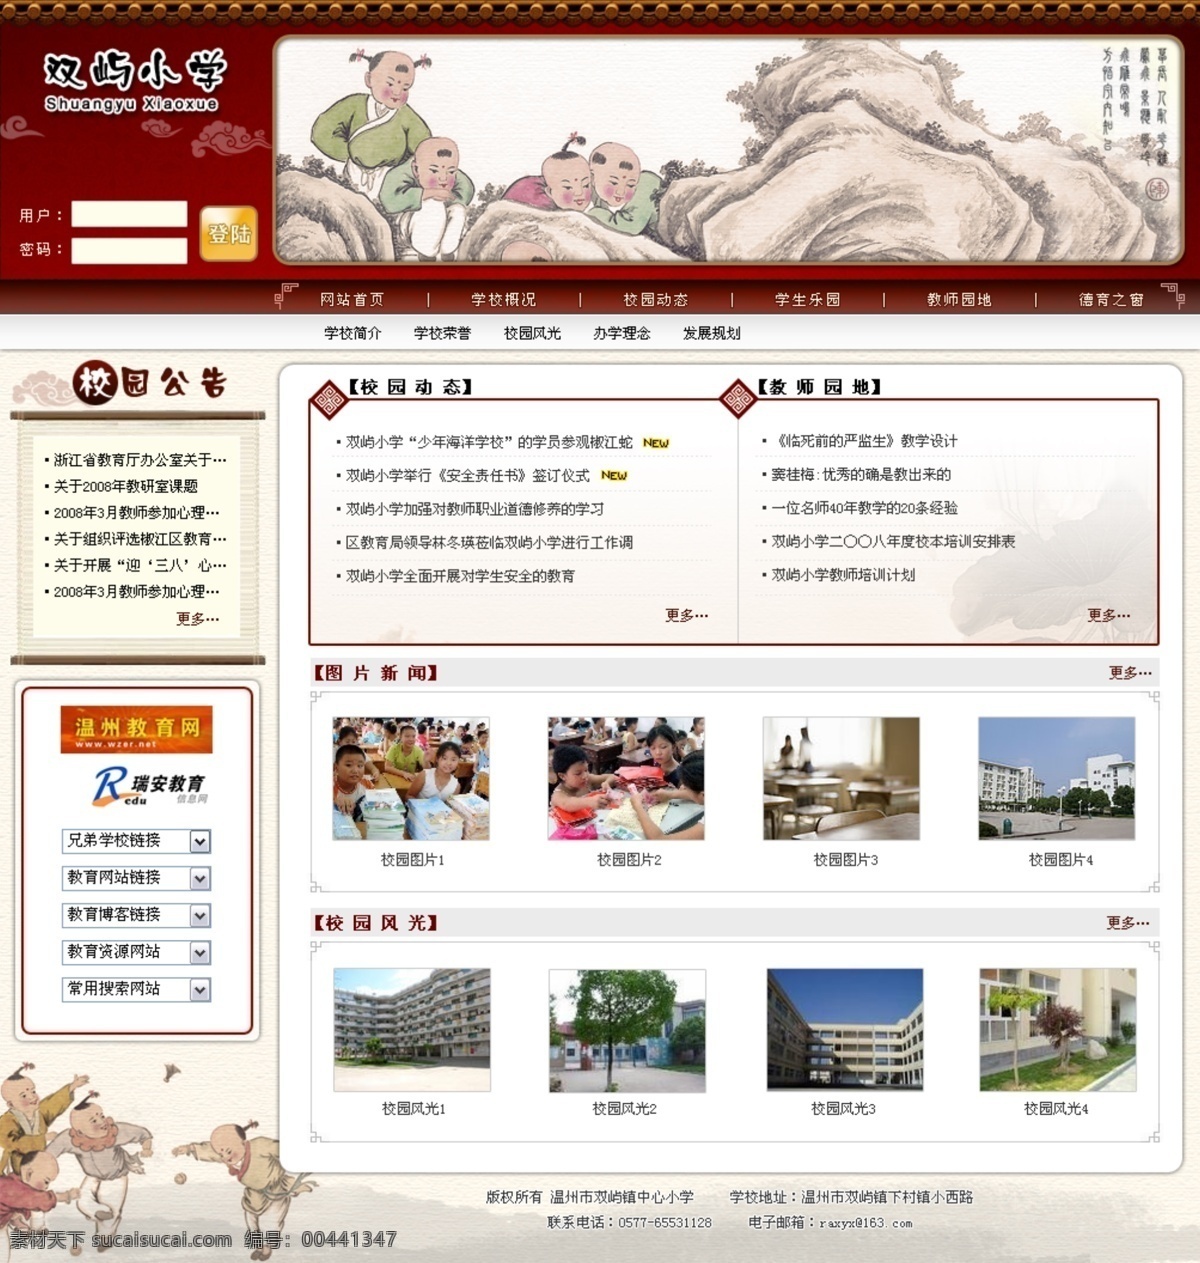 古典 风格 小学 网页模板 中国风格 古典小孩子 网页素材